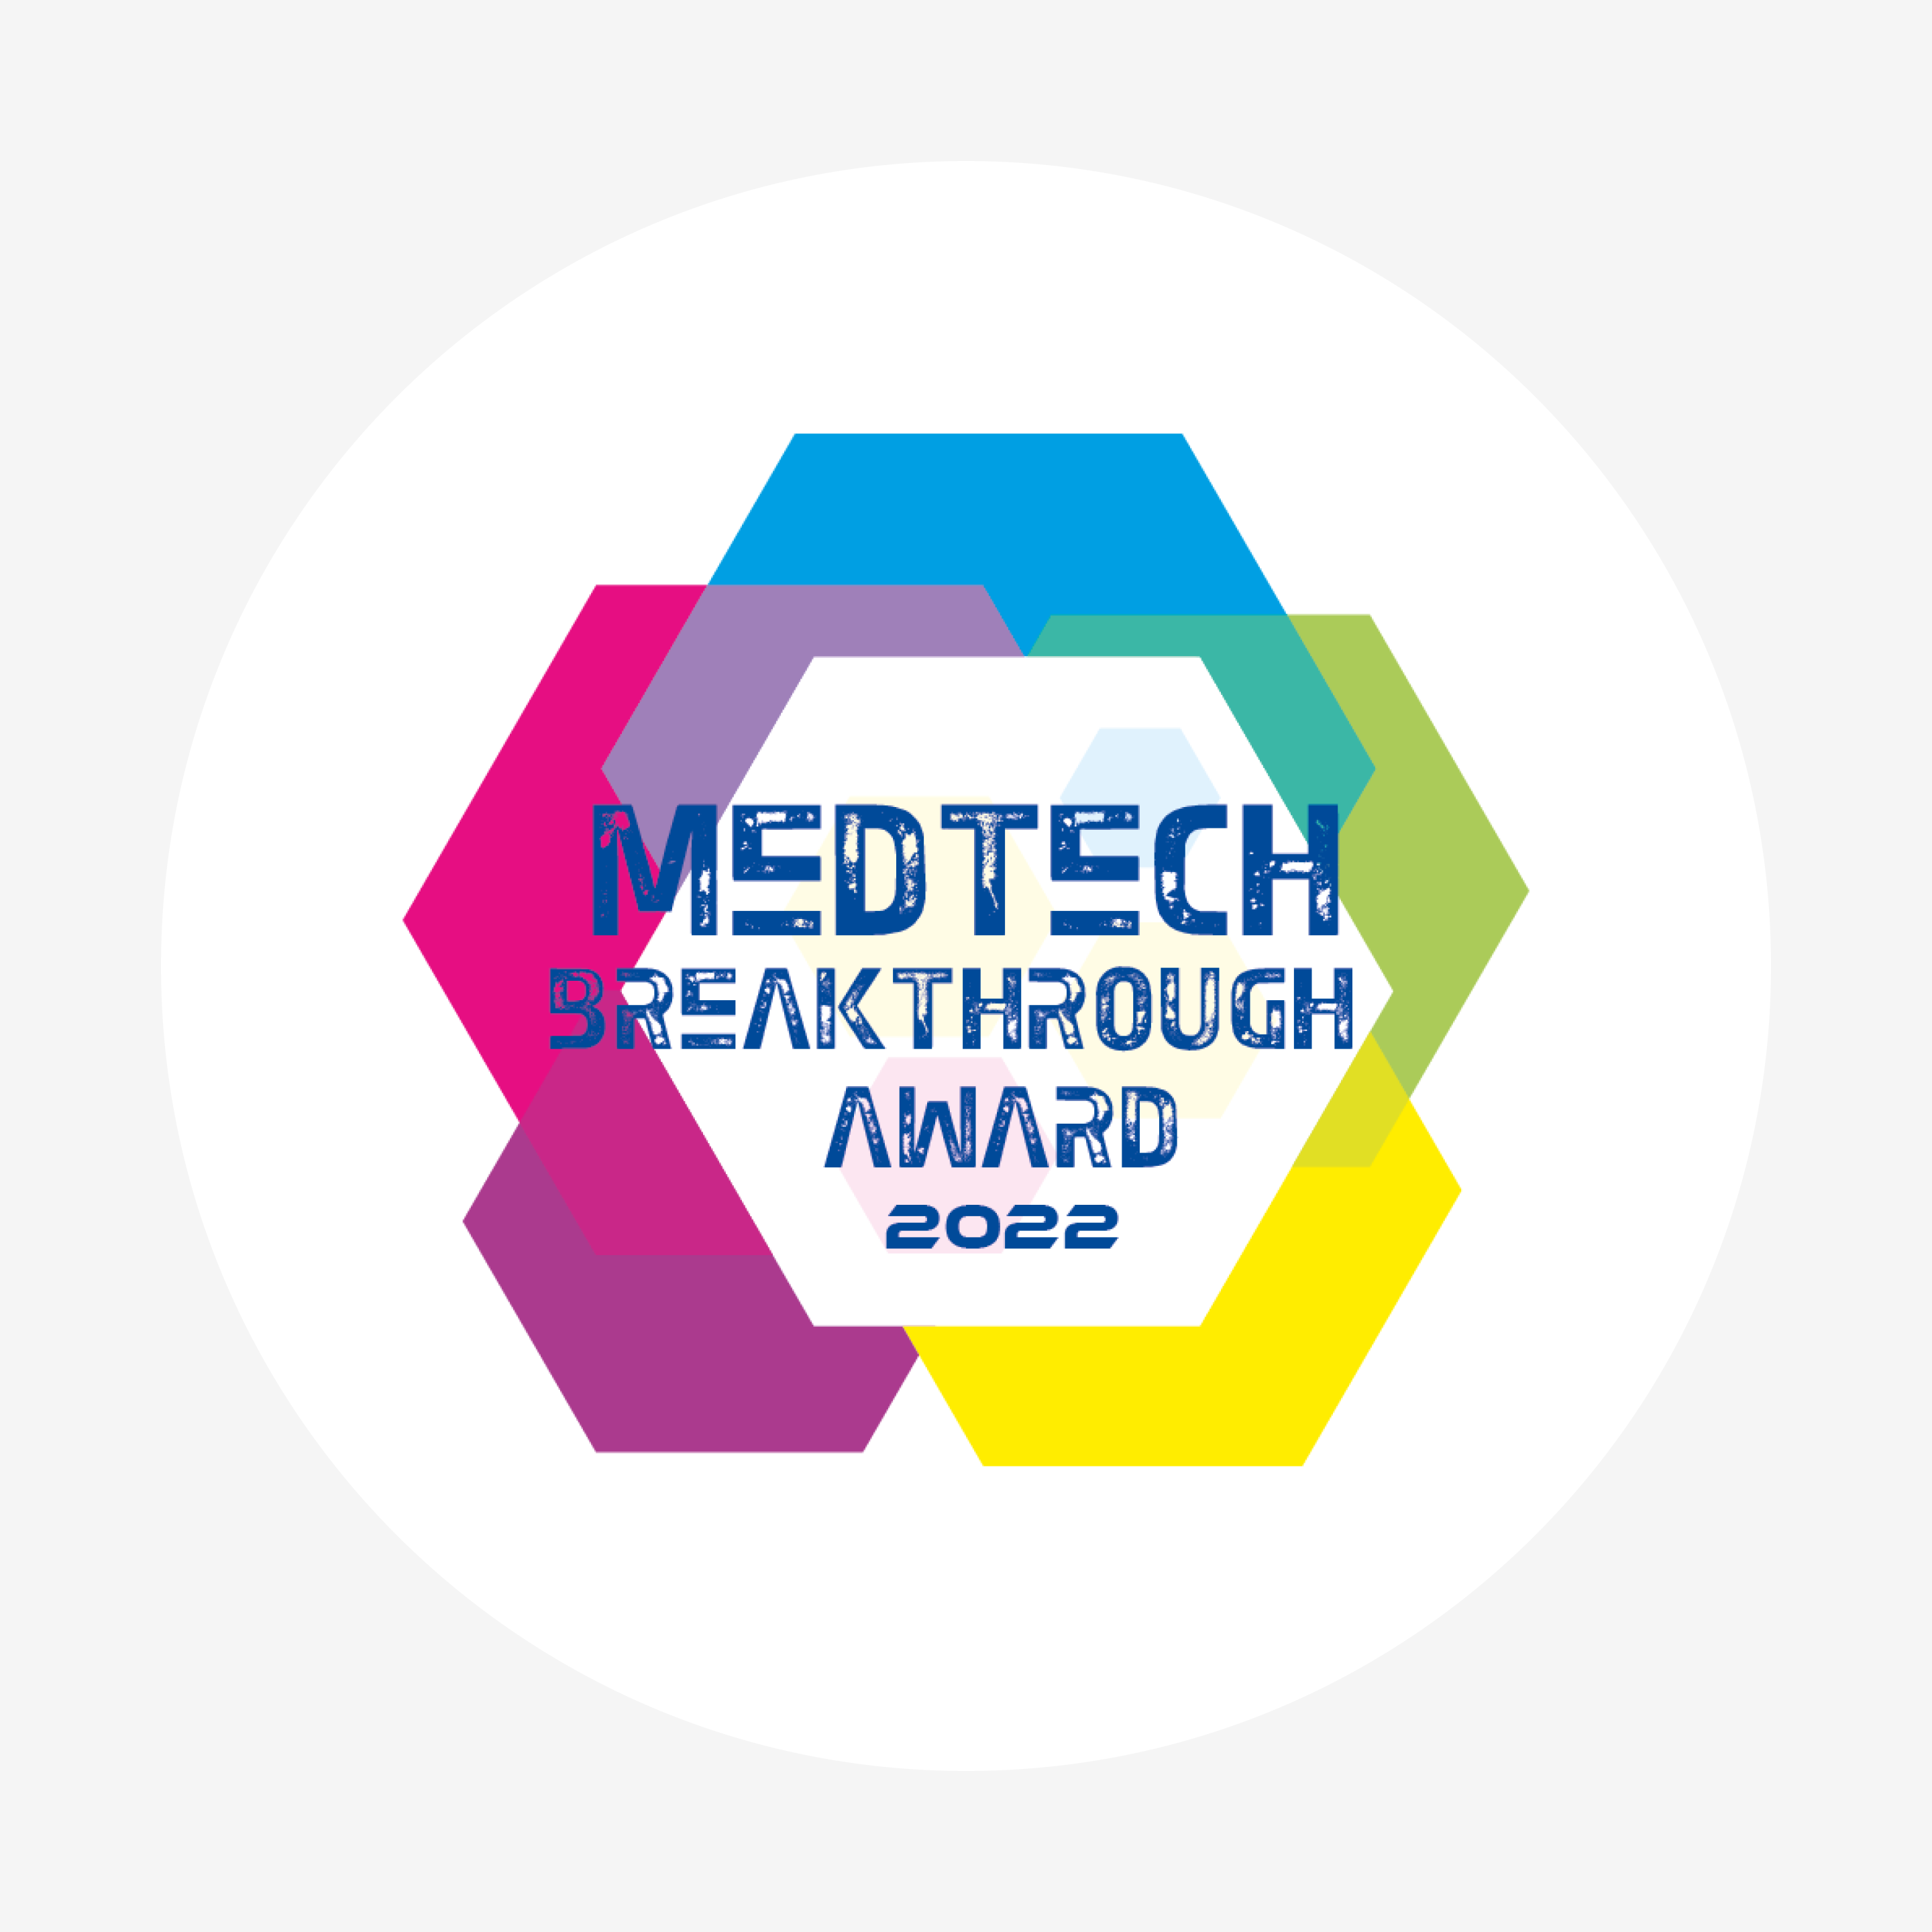 SDC MedTech Breakthrough Award 2022 logo square badge